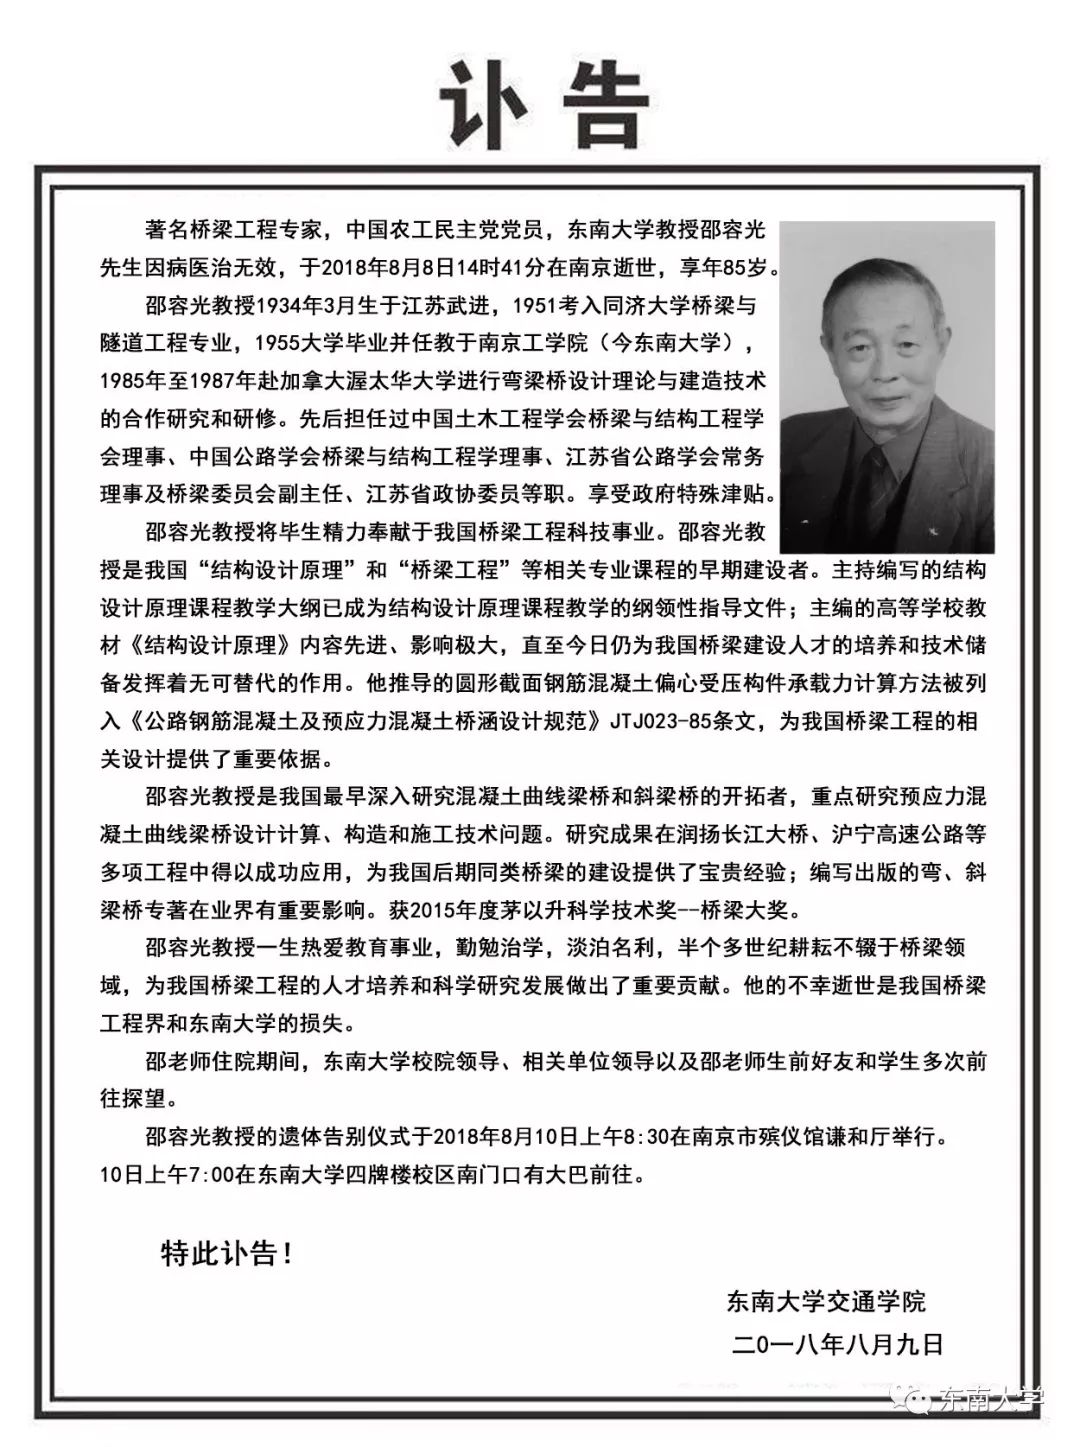 著名桥梁工程专家、东南大学邵容光教授逝世